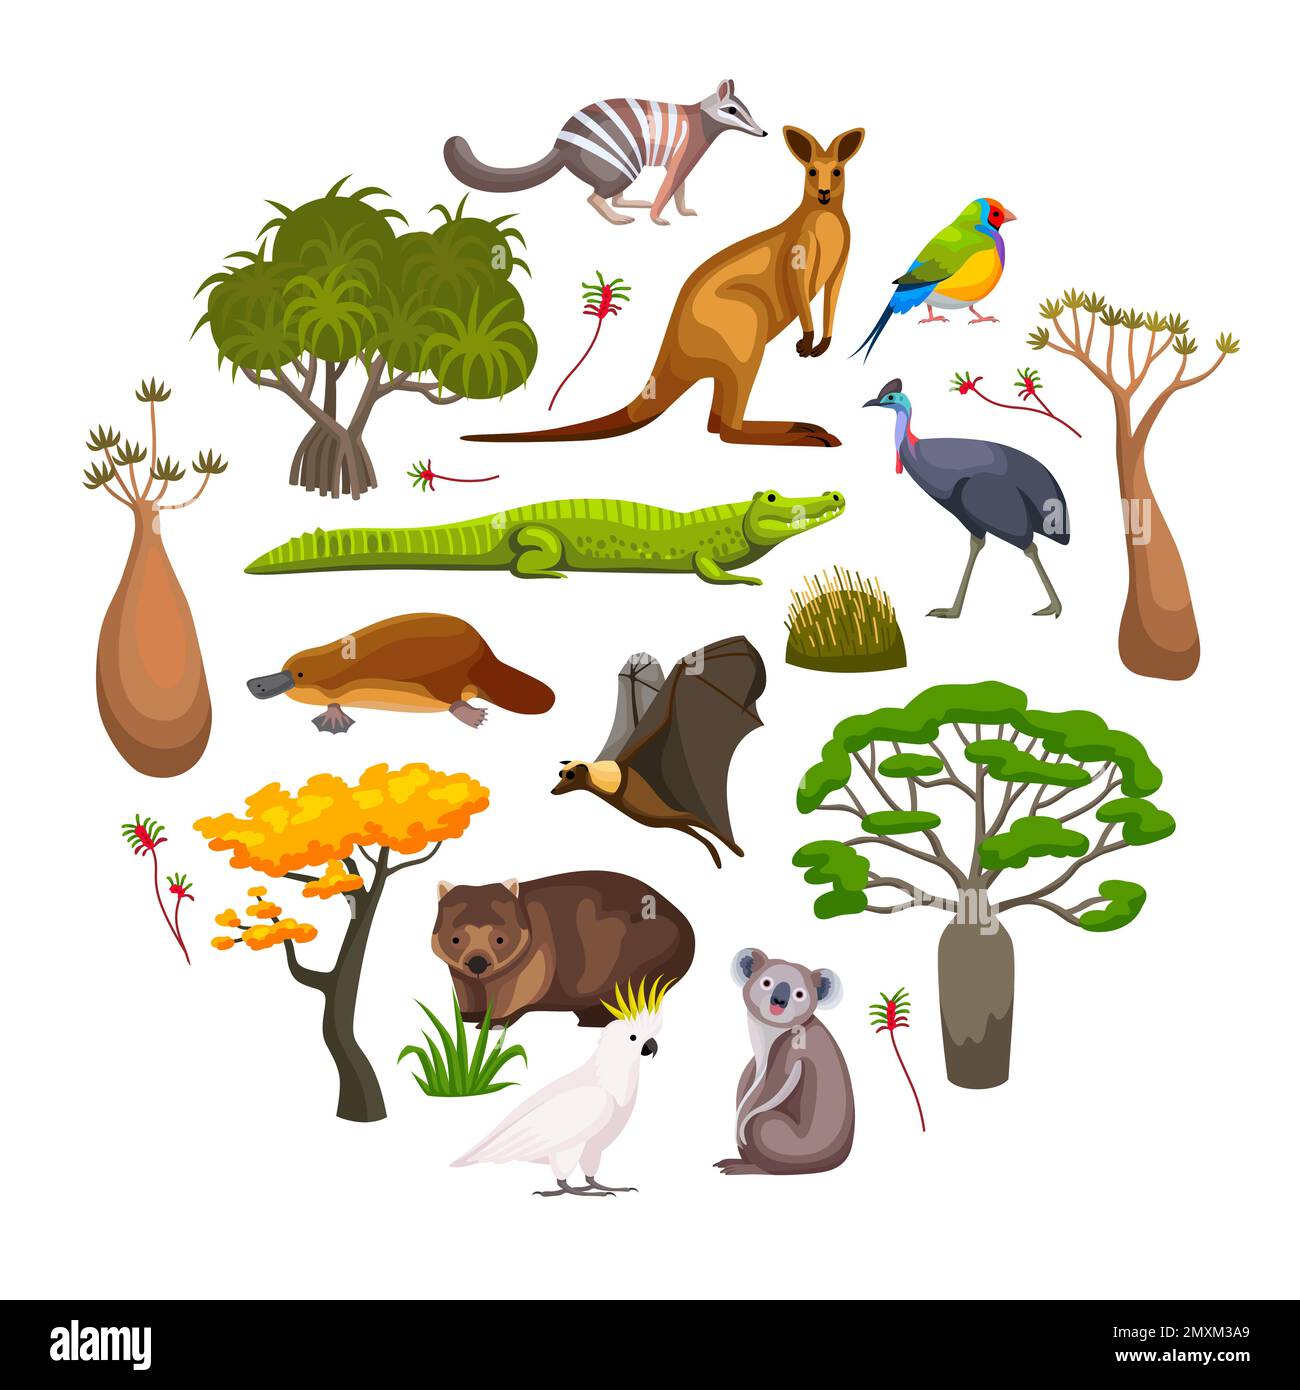 Flora und Fauna Australiens flache runde Komposition mit Wildtieren, Vögeln und exotischen Pflanzen Vektorgrafik Stock Vektor